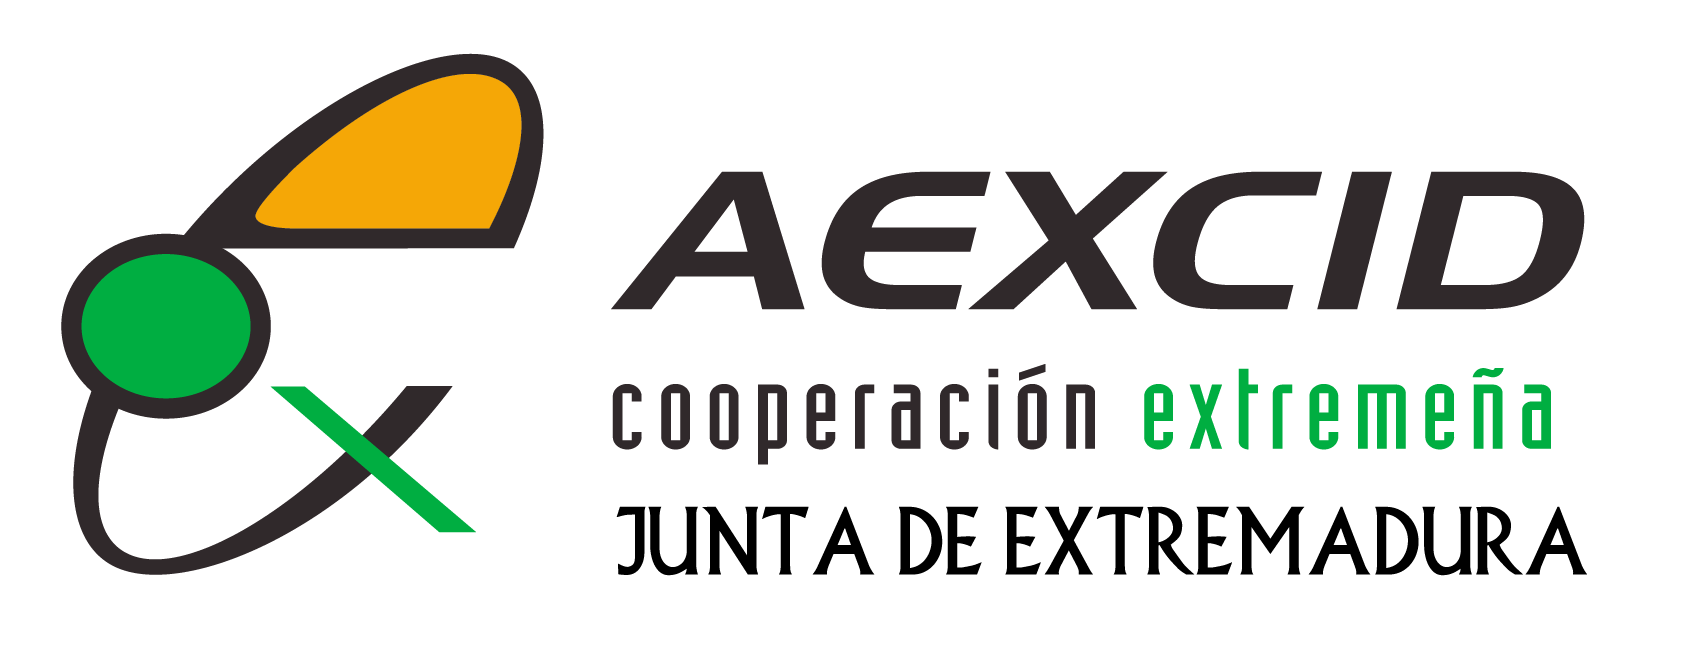 Logo AEXCID